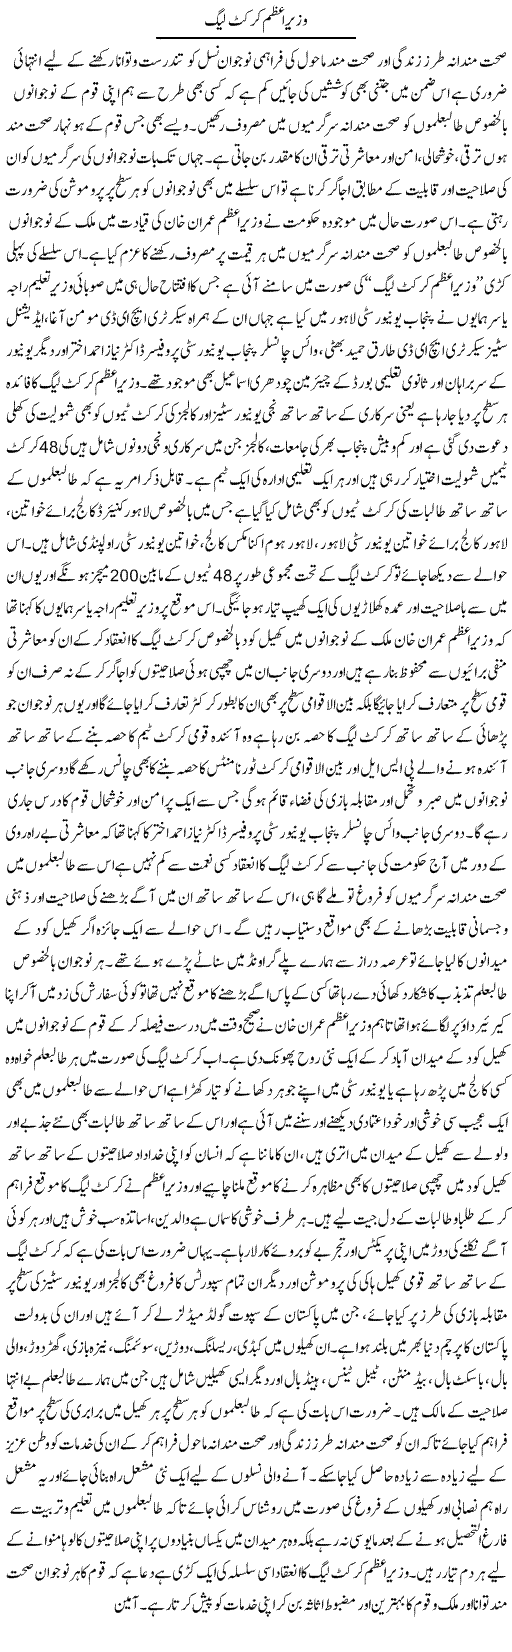 Wazir e Azam Cricket League | Yousaf Abbasi | Daily Urdu Columns